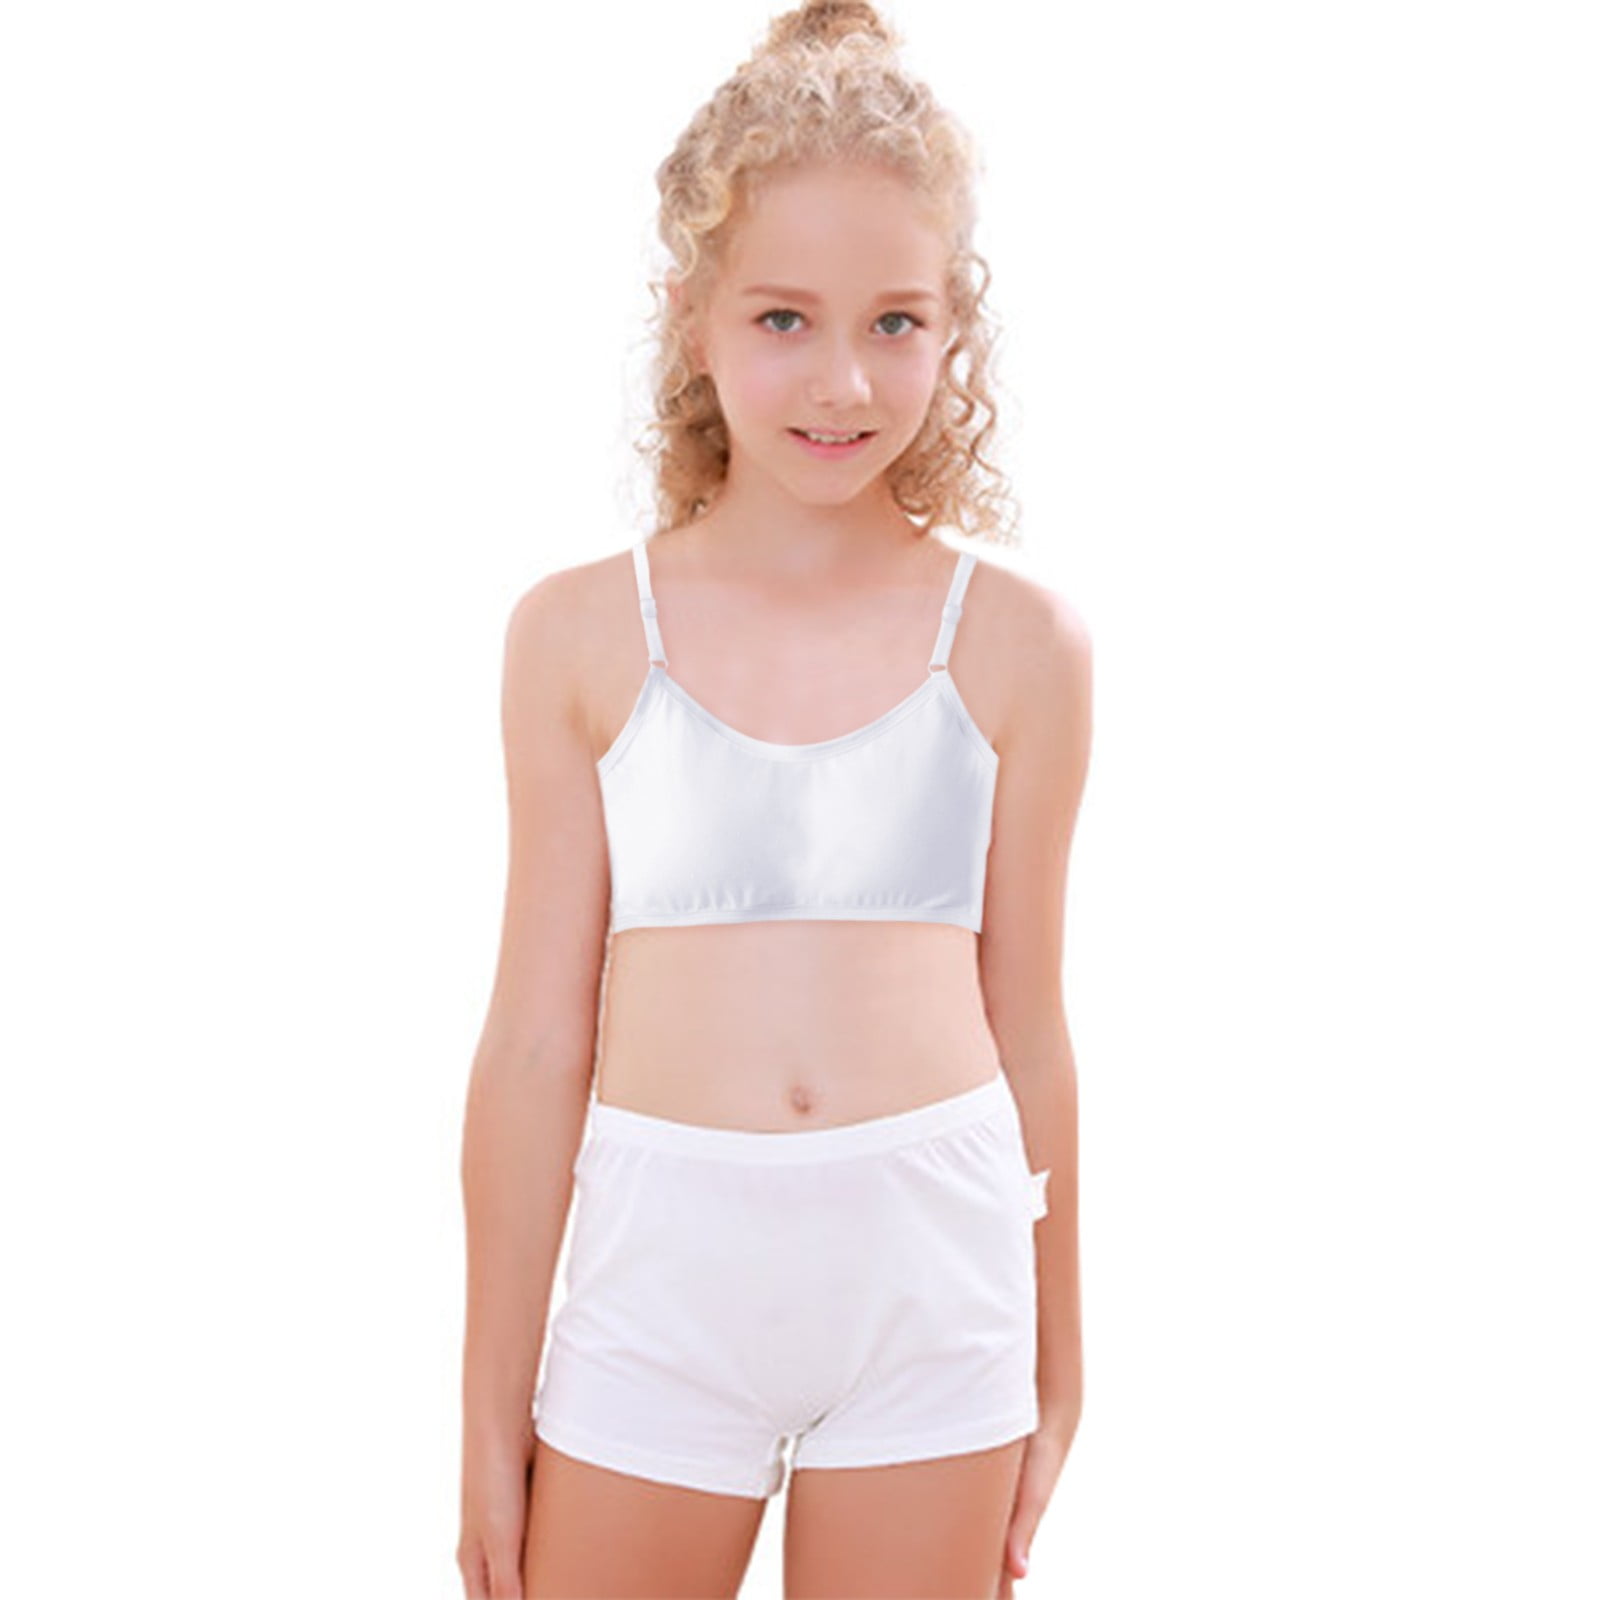 YODETEY Womens Bras Large Size Push Up Kids Girls Underwear Cotton Bra Vest  Children Underclothes Sport Undies Clothes White S